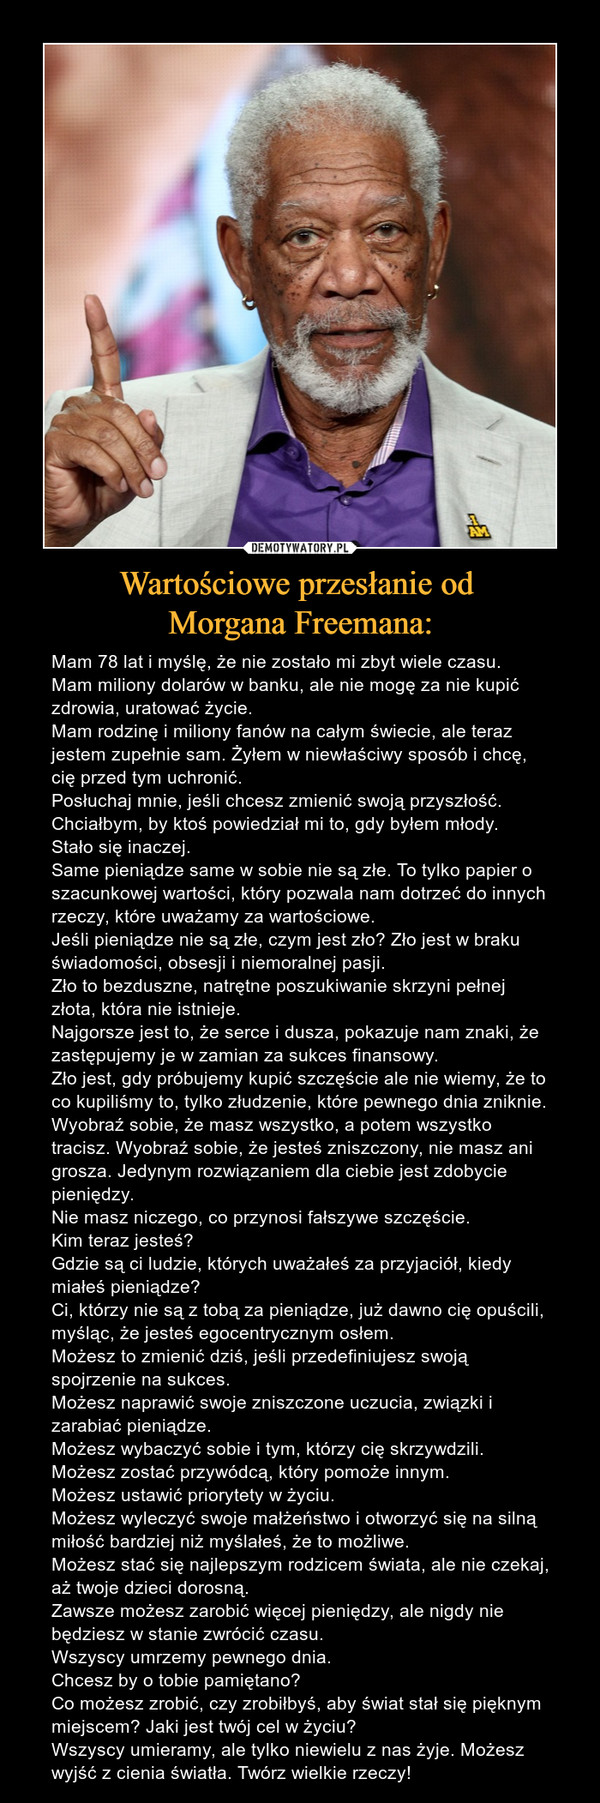 Wartościowe przesłanie od 
Morgana Freemana: